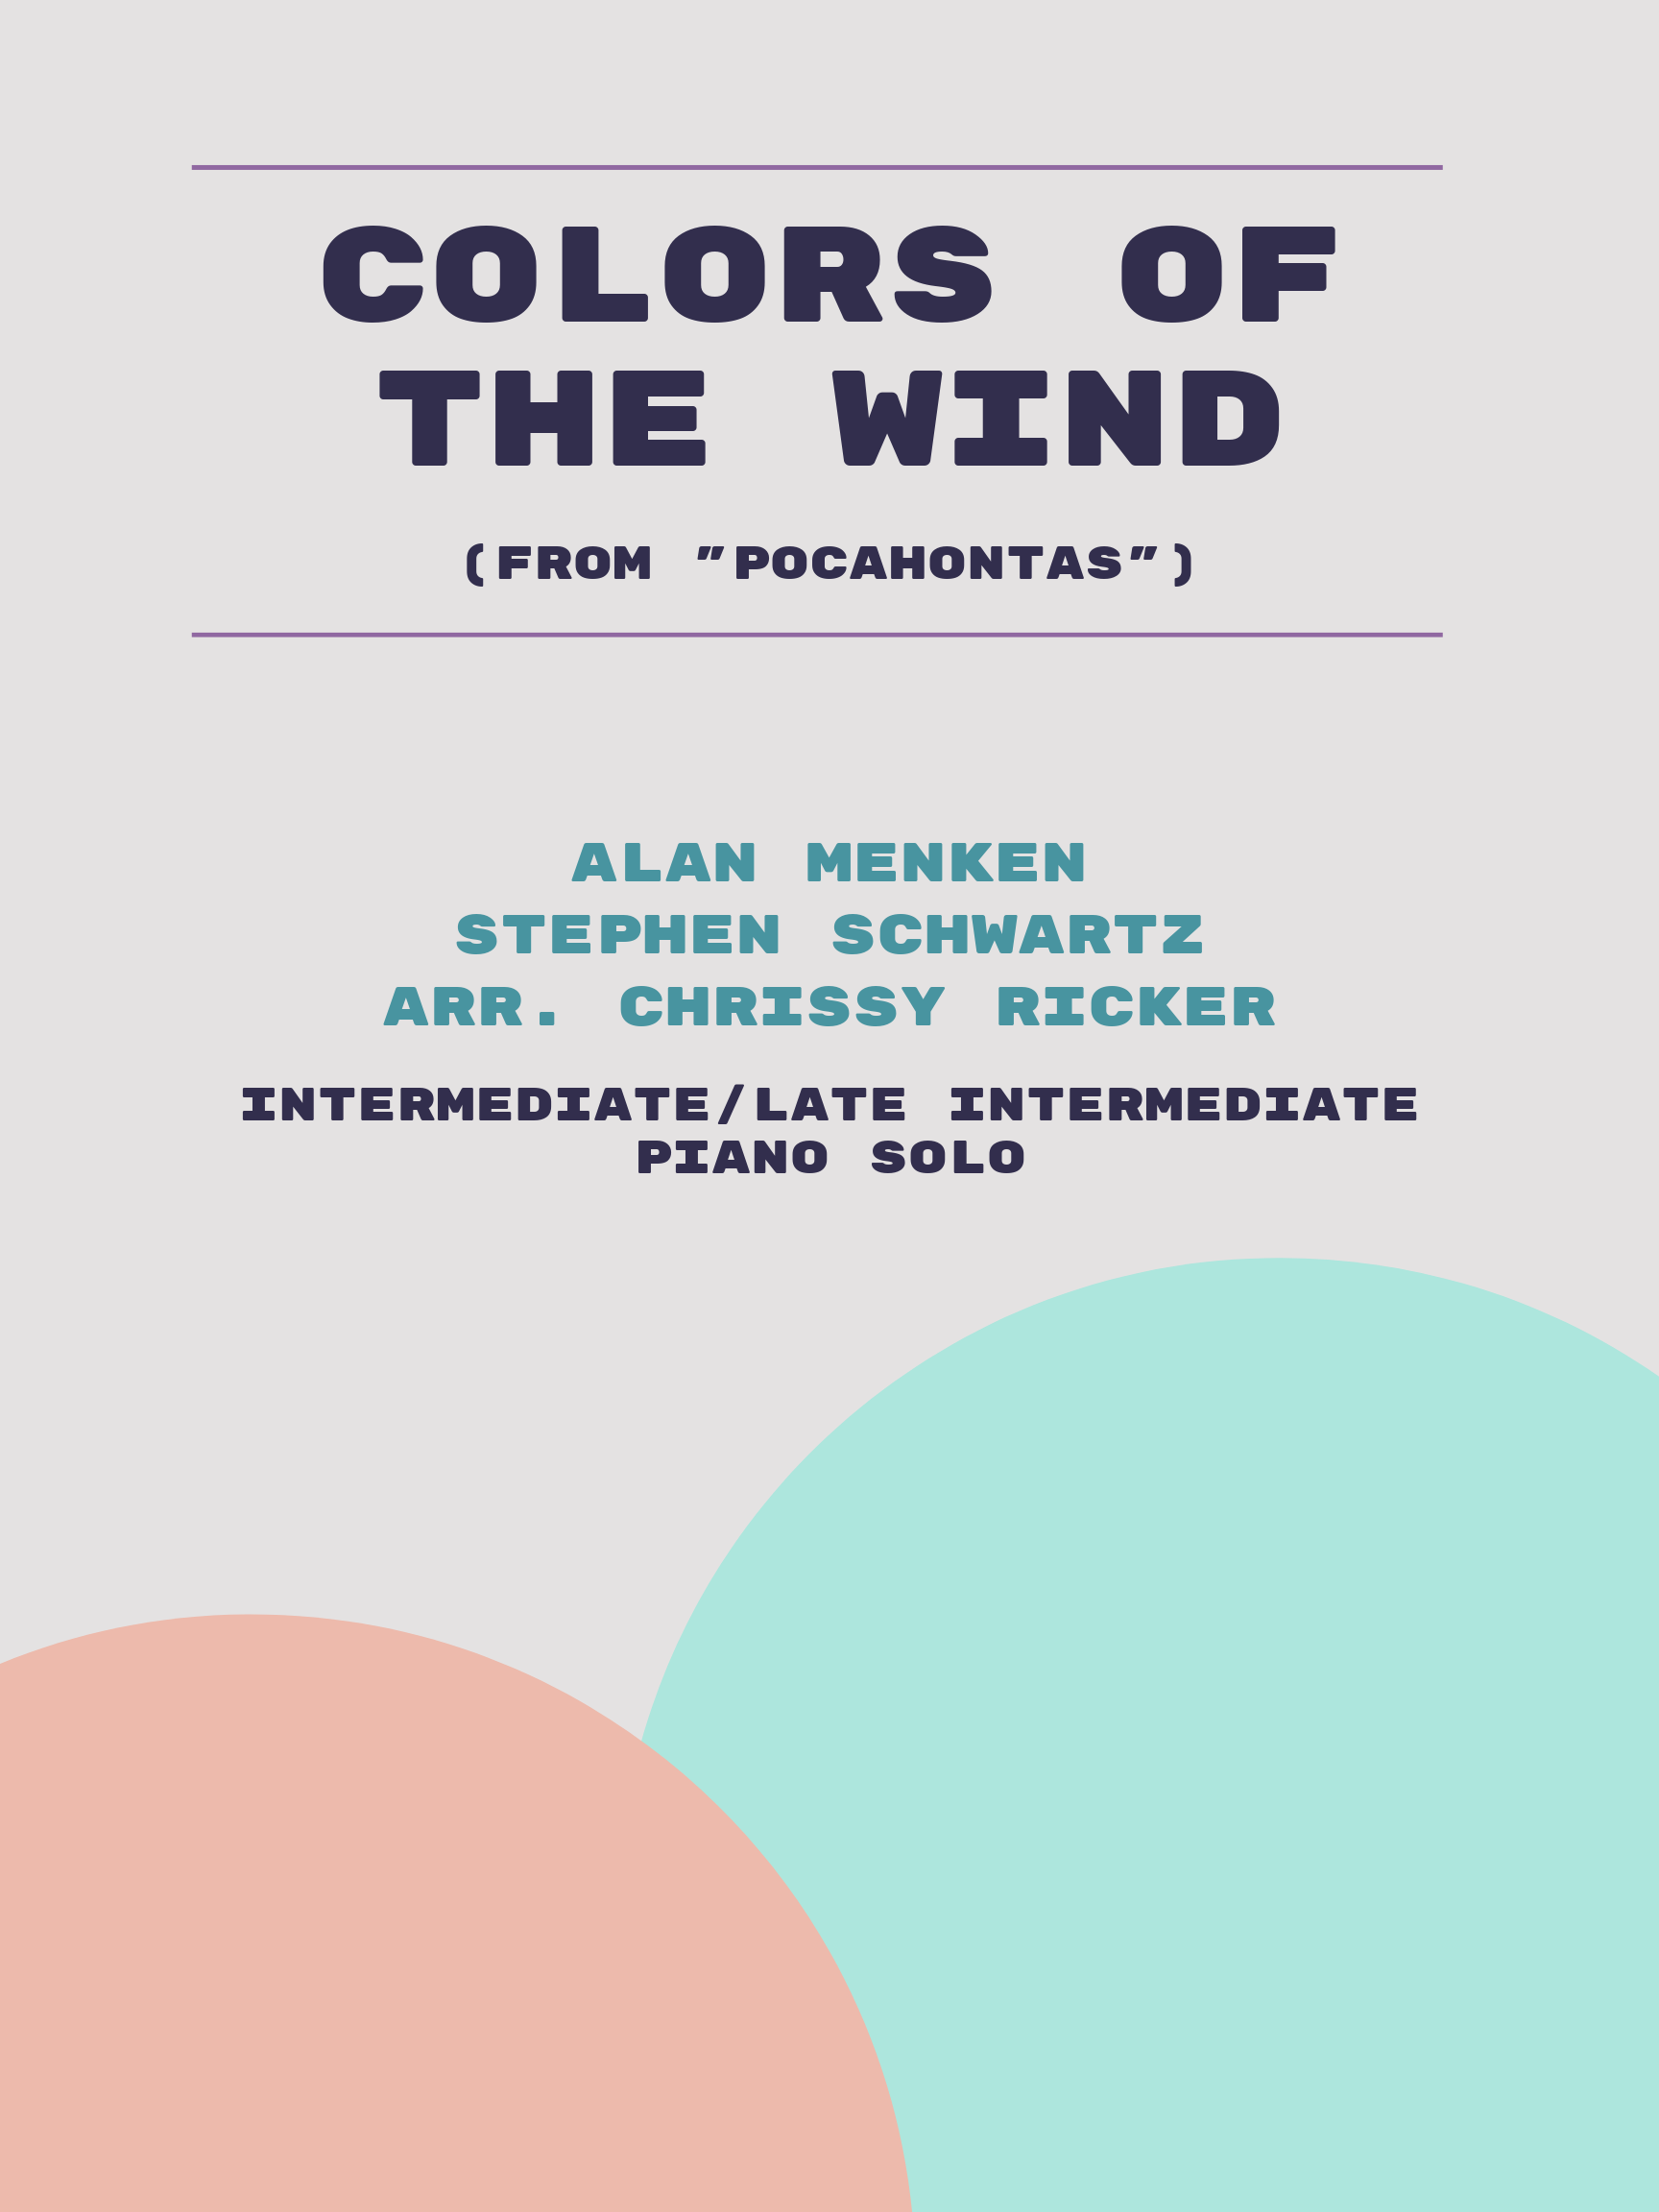 Colors of the Wind by Alan Menken, Stephen Schwartz